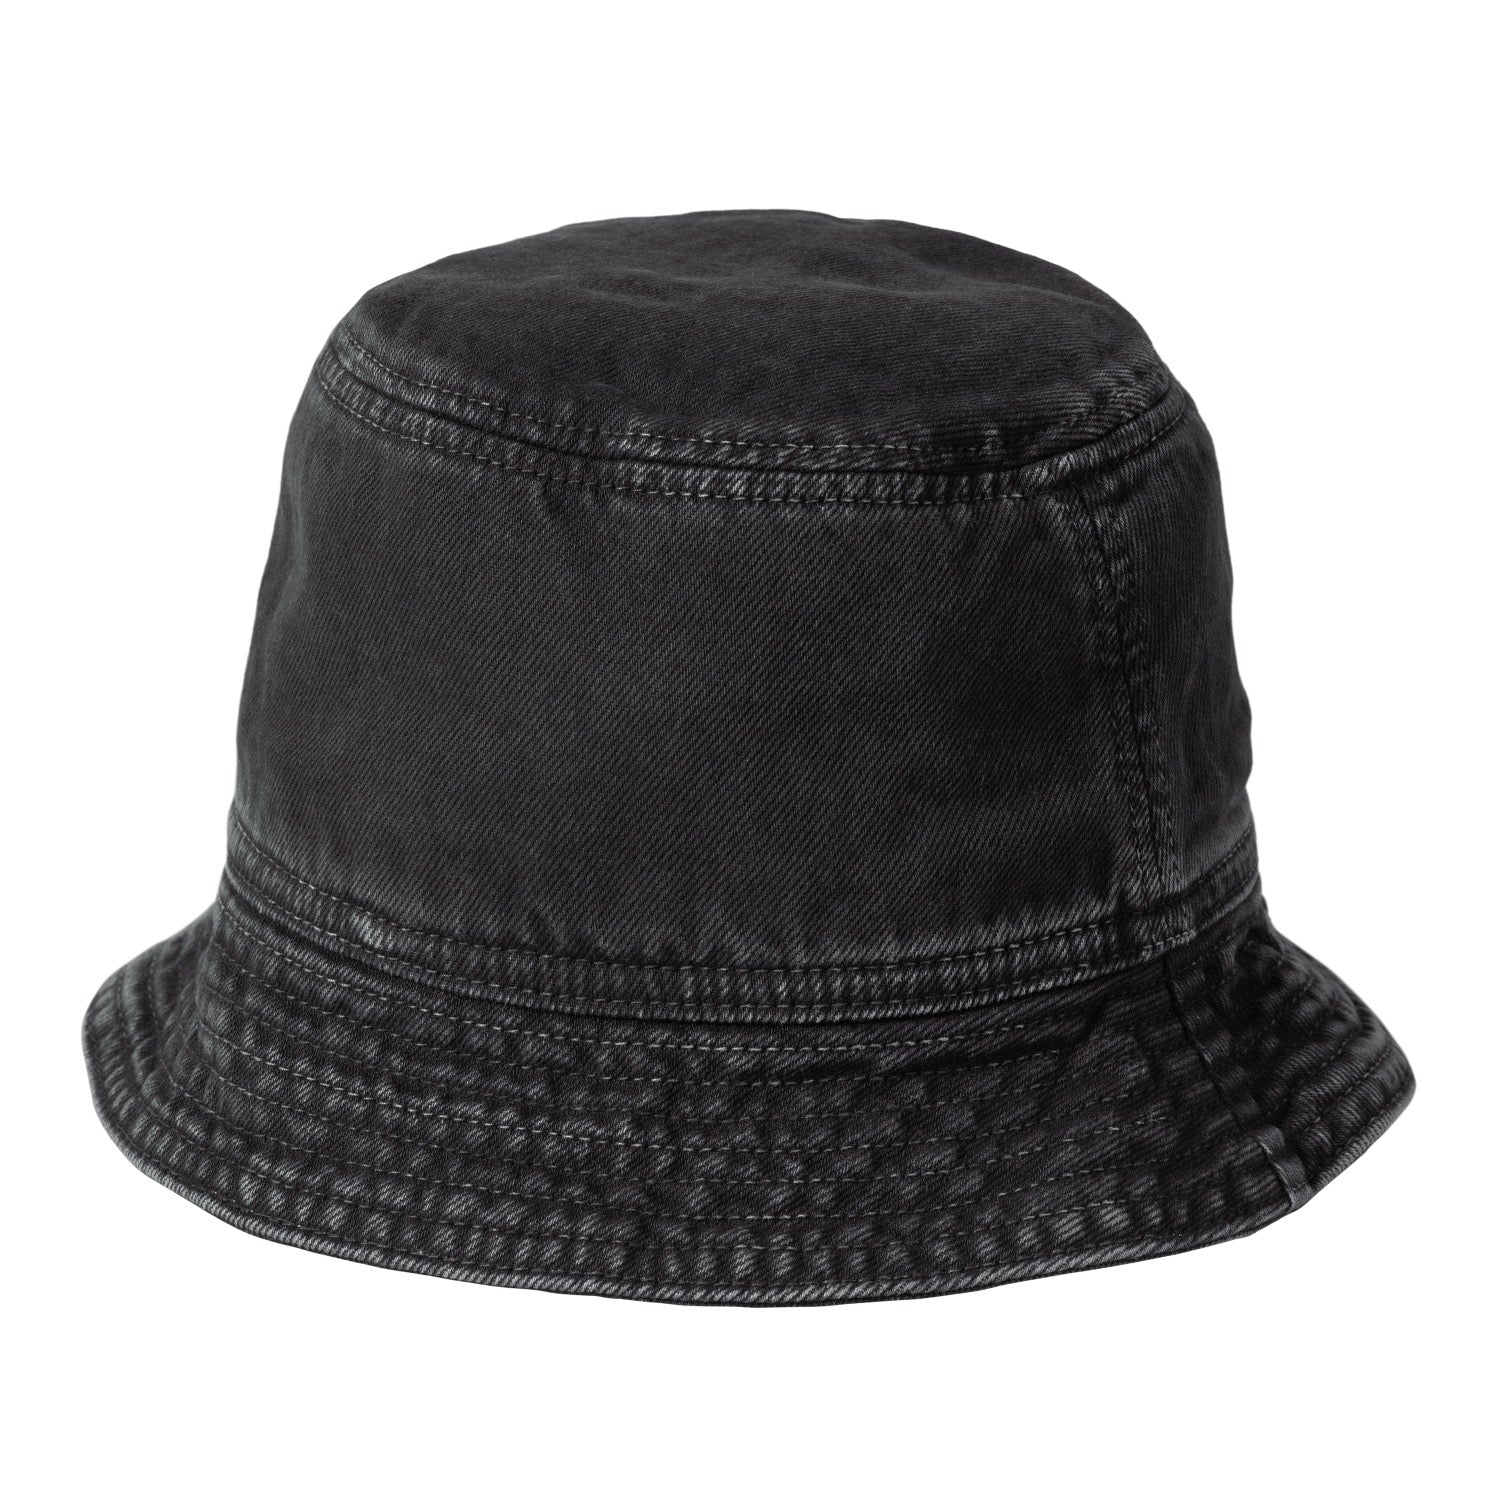 GARRISON BUCKET HAT - Black (stone dyed)